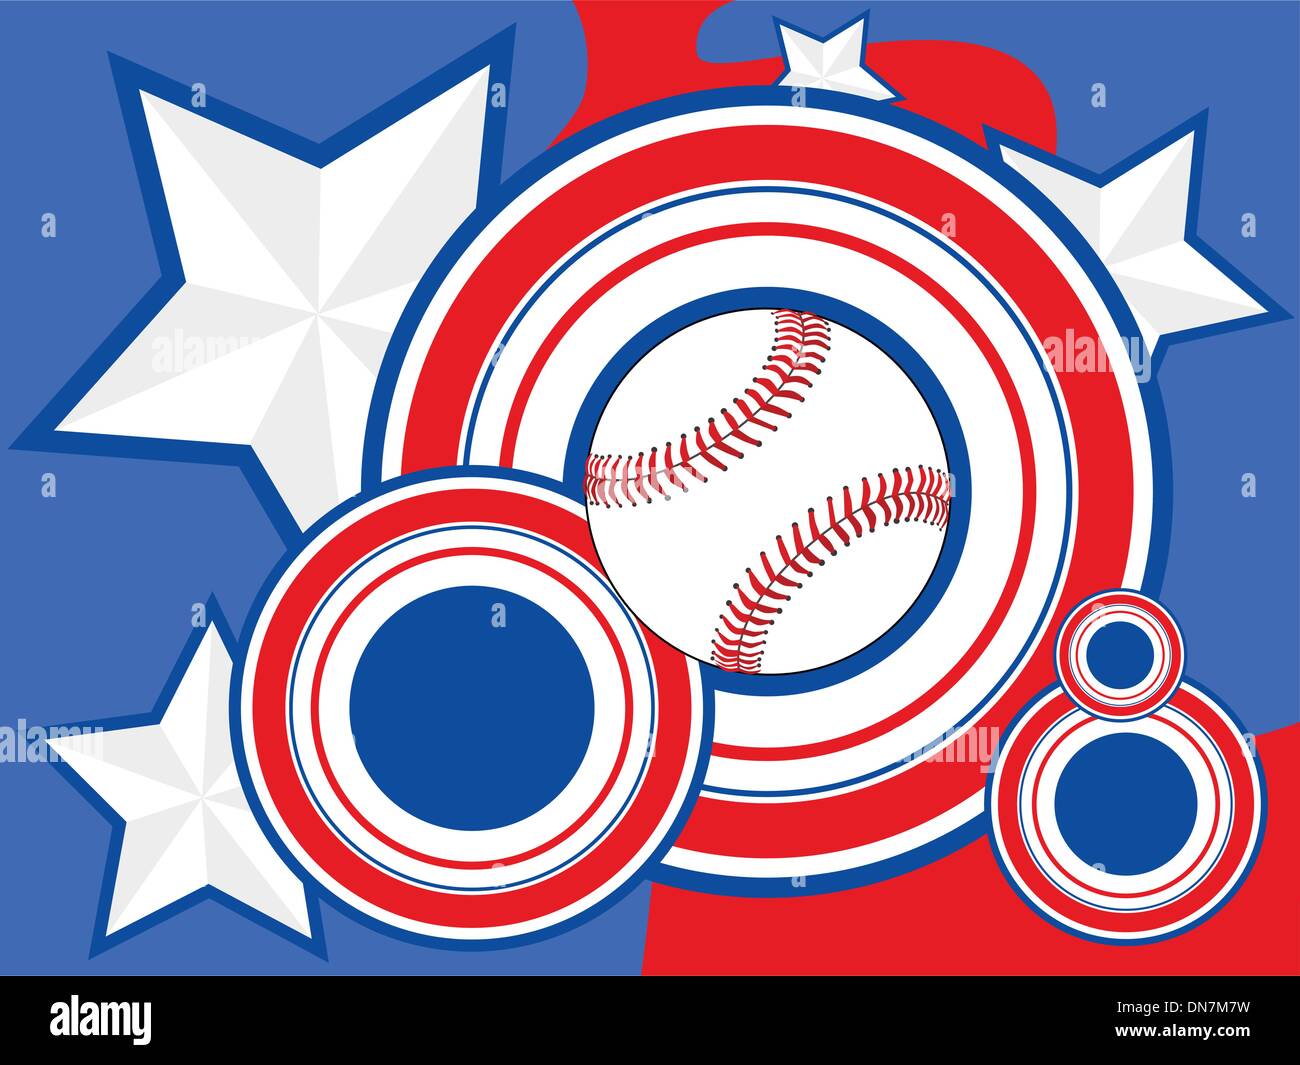 Usa baseball Stock Vector Images - Alamy